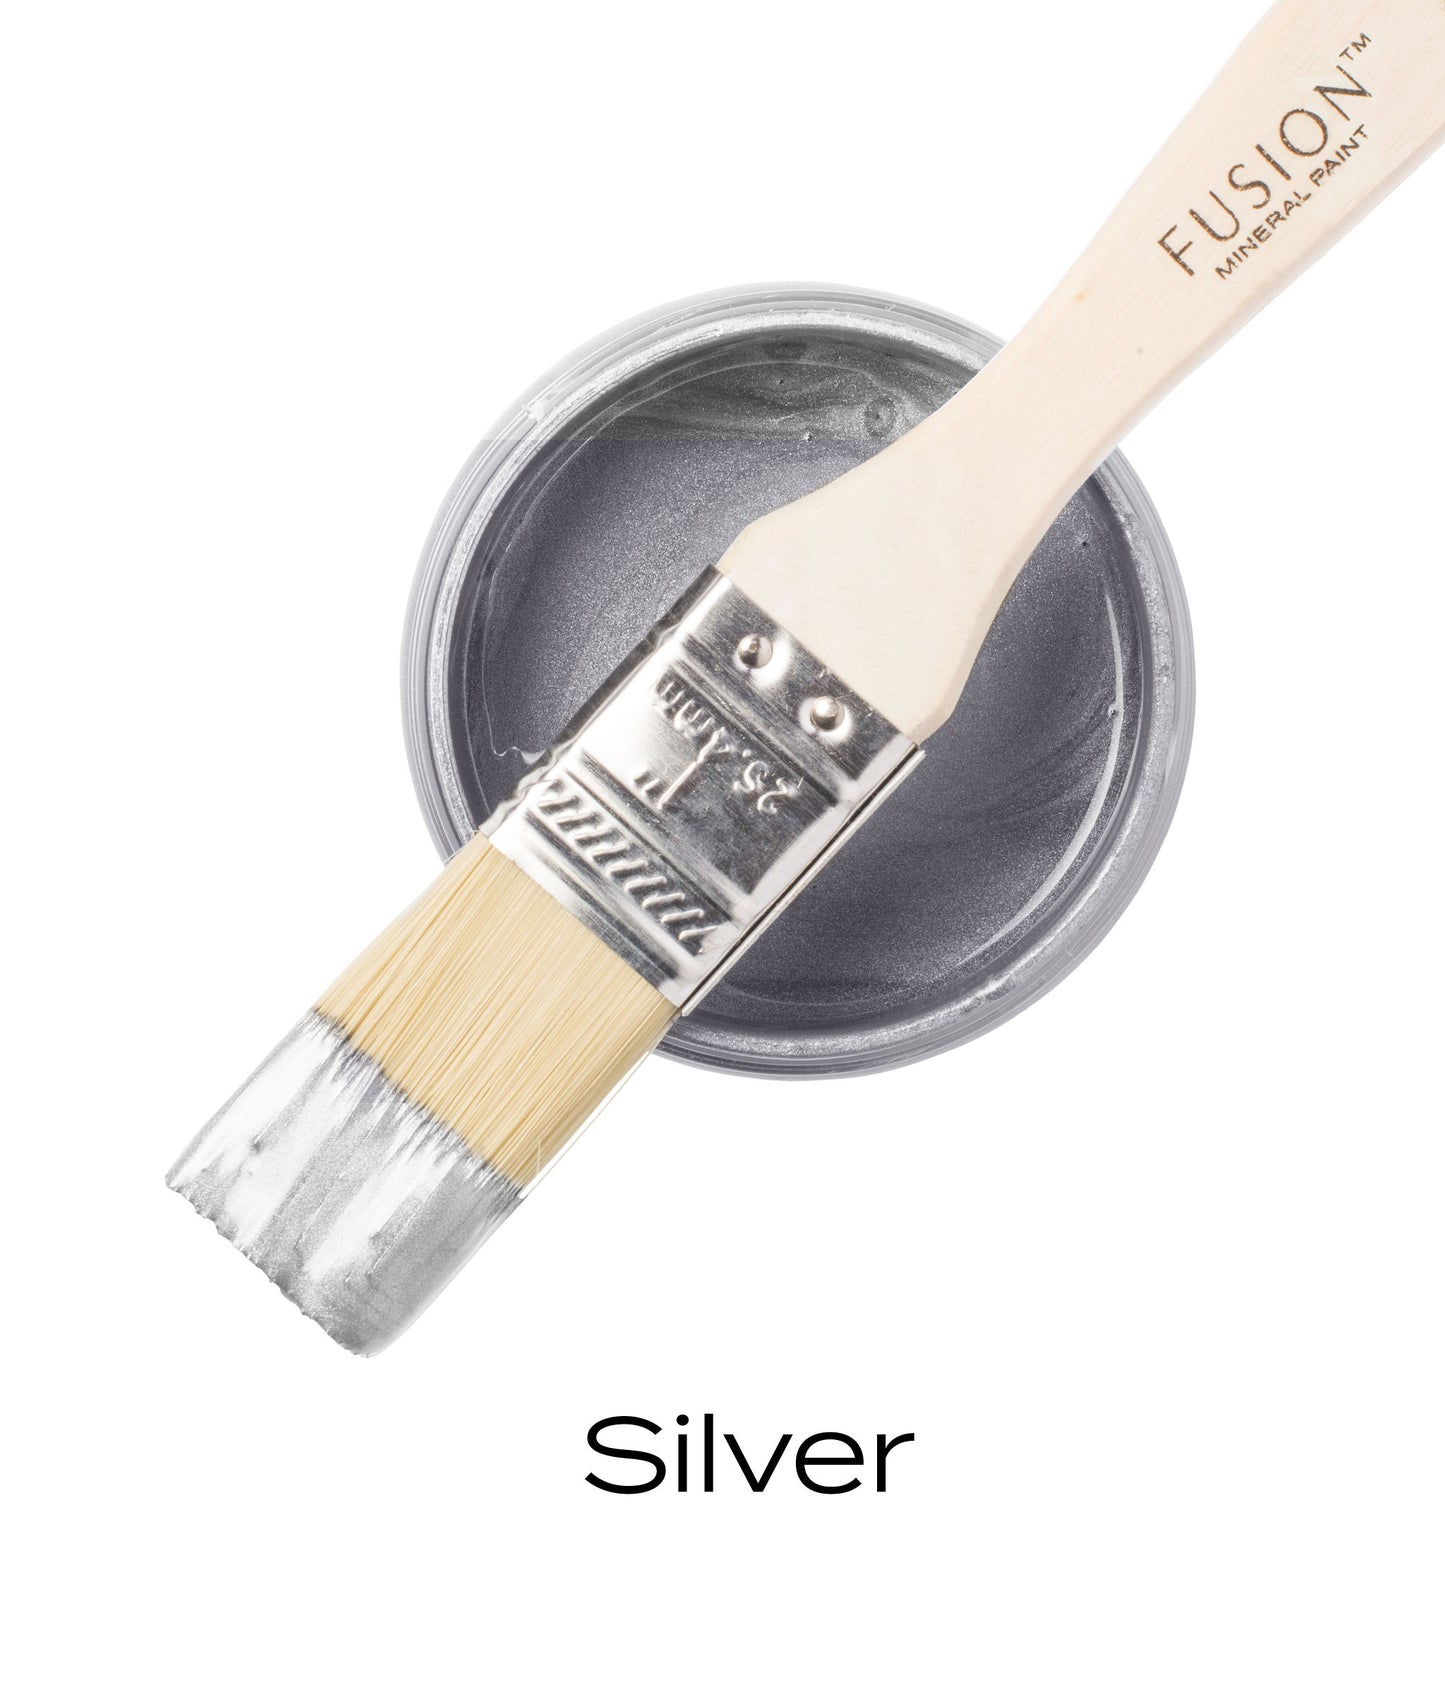 Fusion Metallic Collection Silver